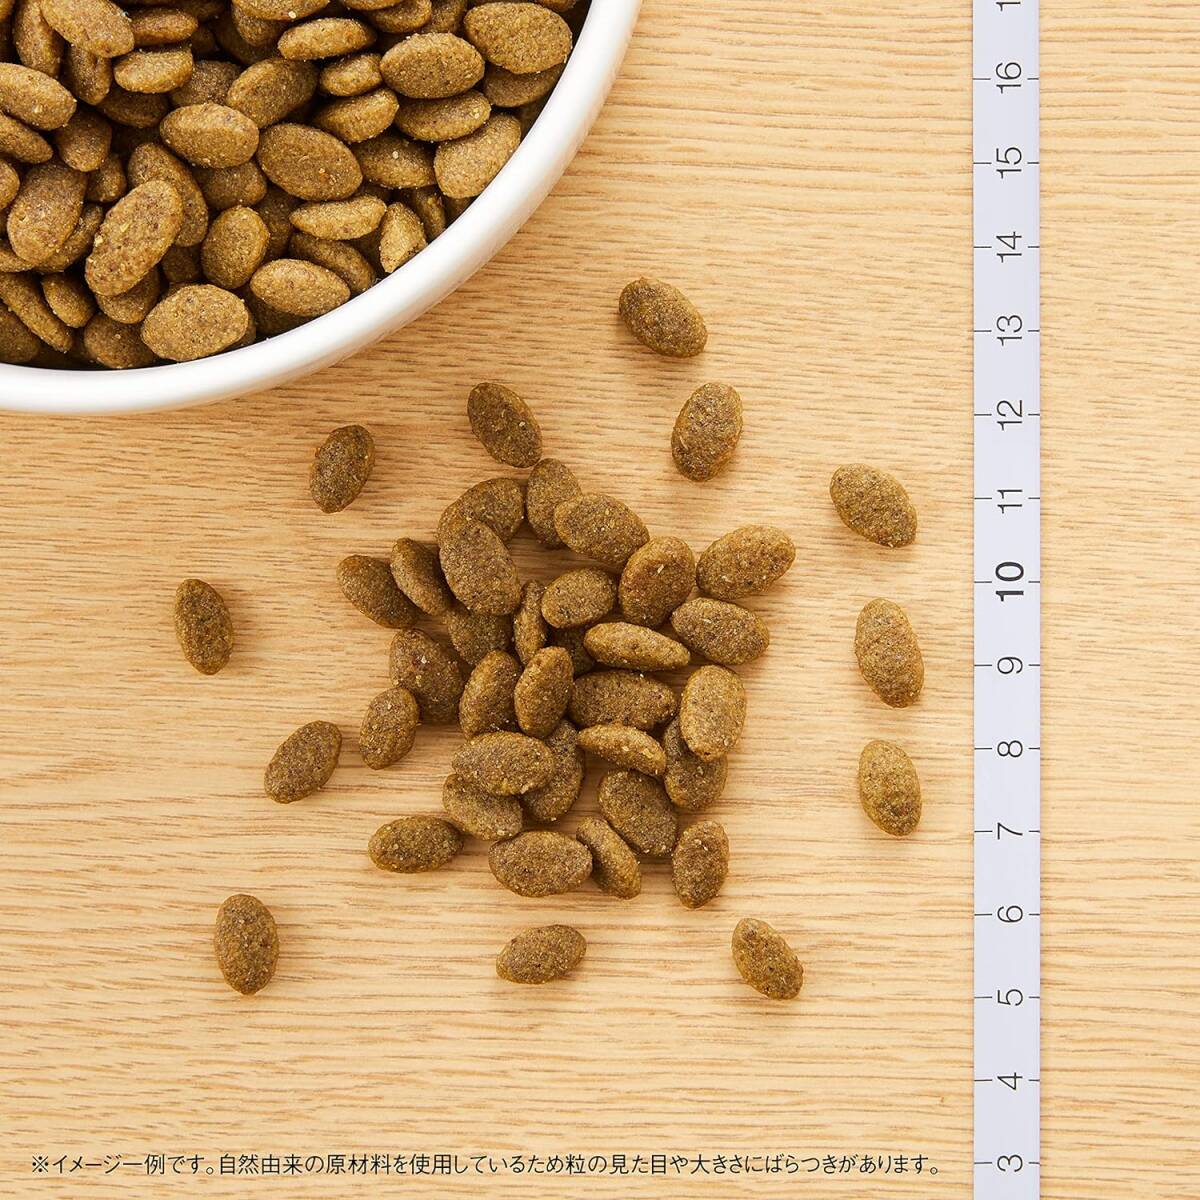 2) 2kg(おすすめ) Nutro ニュートロ ナチュラル チョイス キャット 穀物フリー アダルト サーモン 2kg キャット_画像7